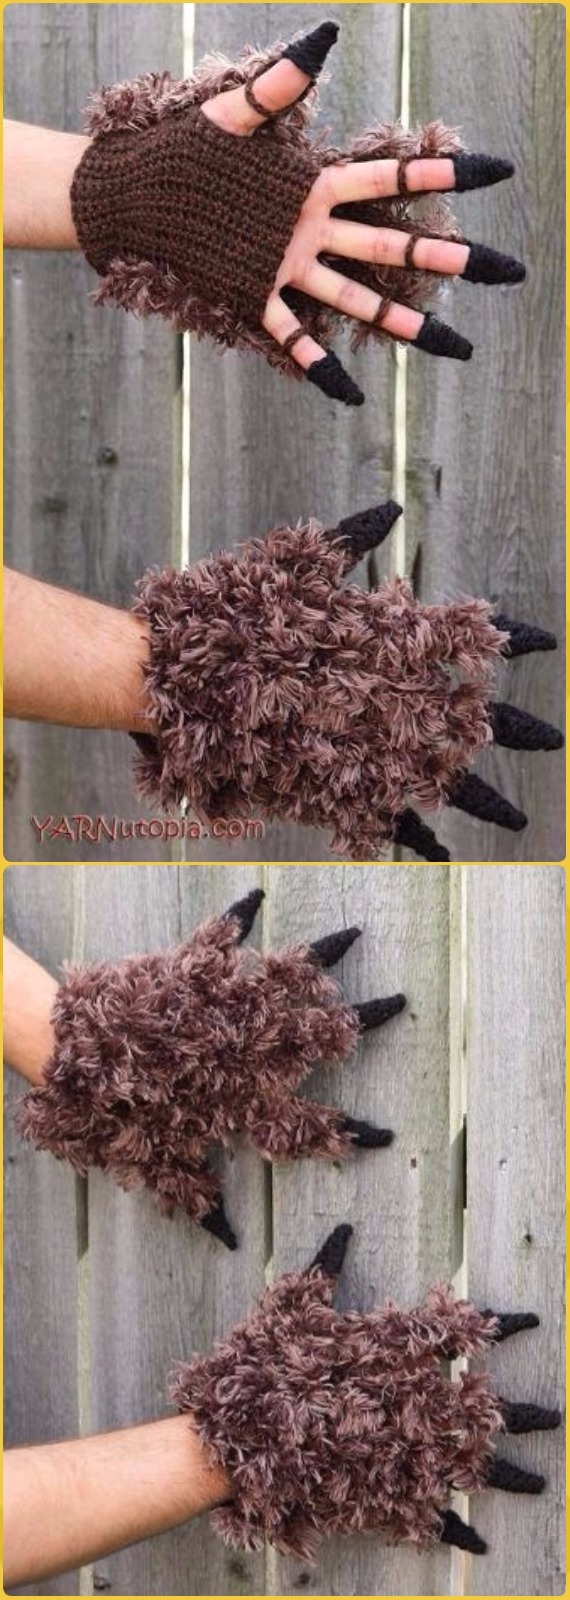 Crochet Beast Costume Gloves Free Pattern - Crochet Arm Warmer Free Patterns 